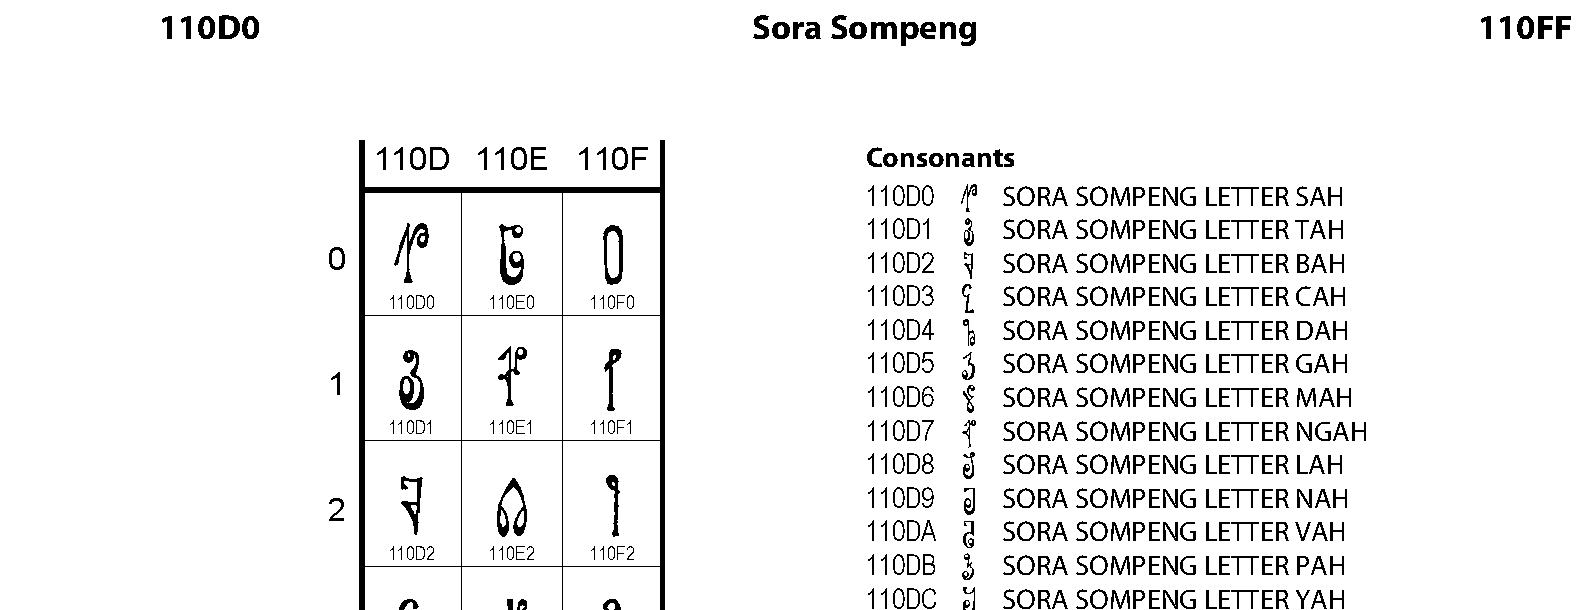 Unicode - Sora Sompeng